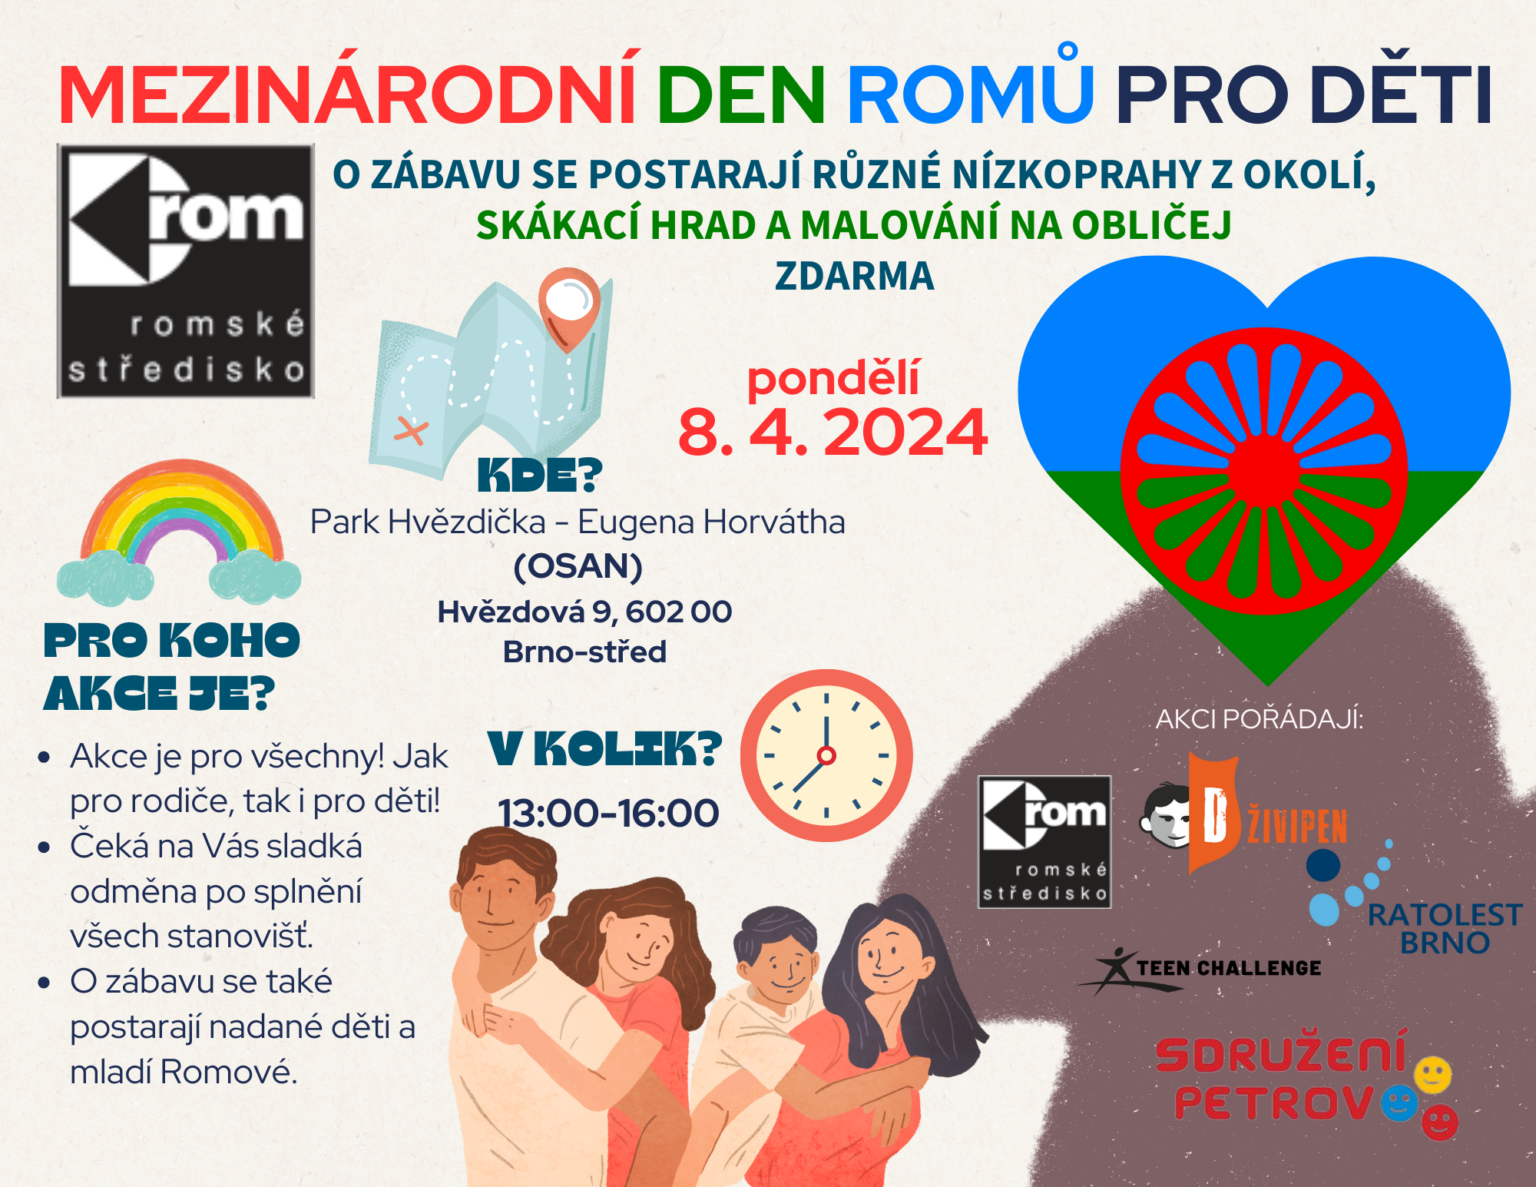 Zveme Vás na oslavu Mezinárodního dne Romů pro děti